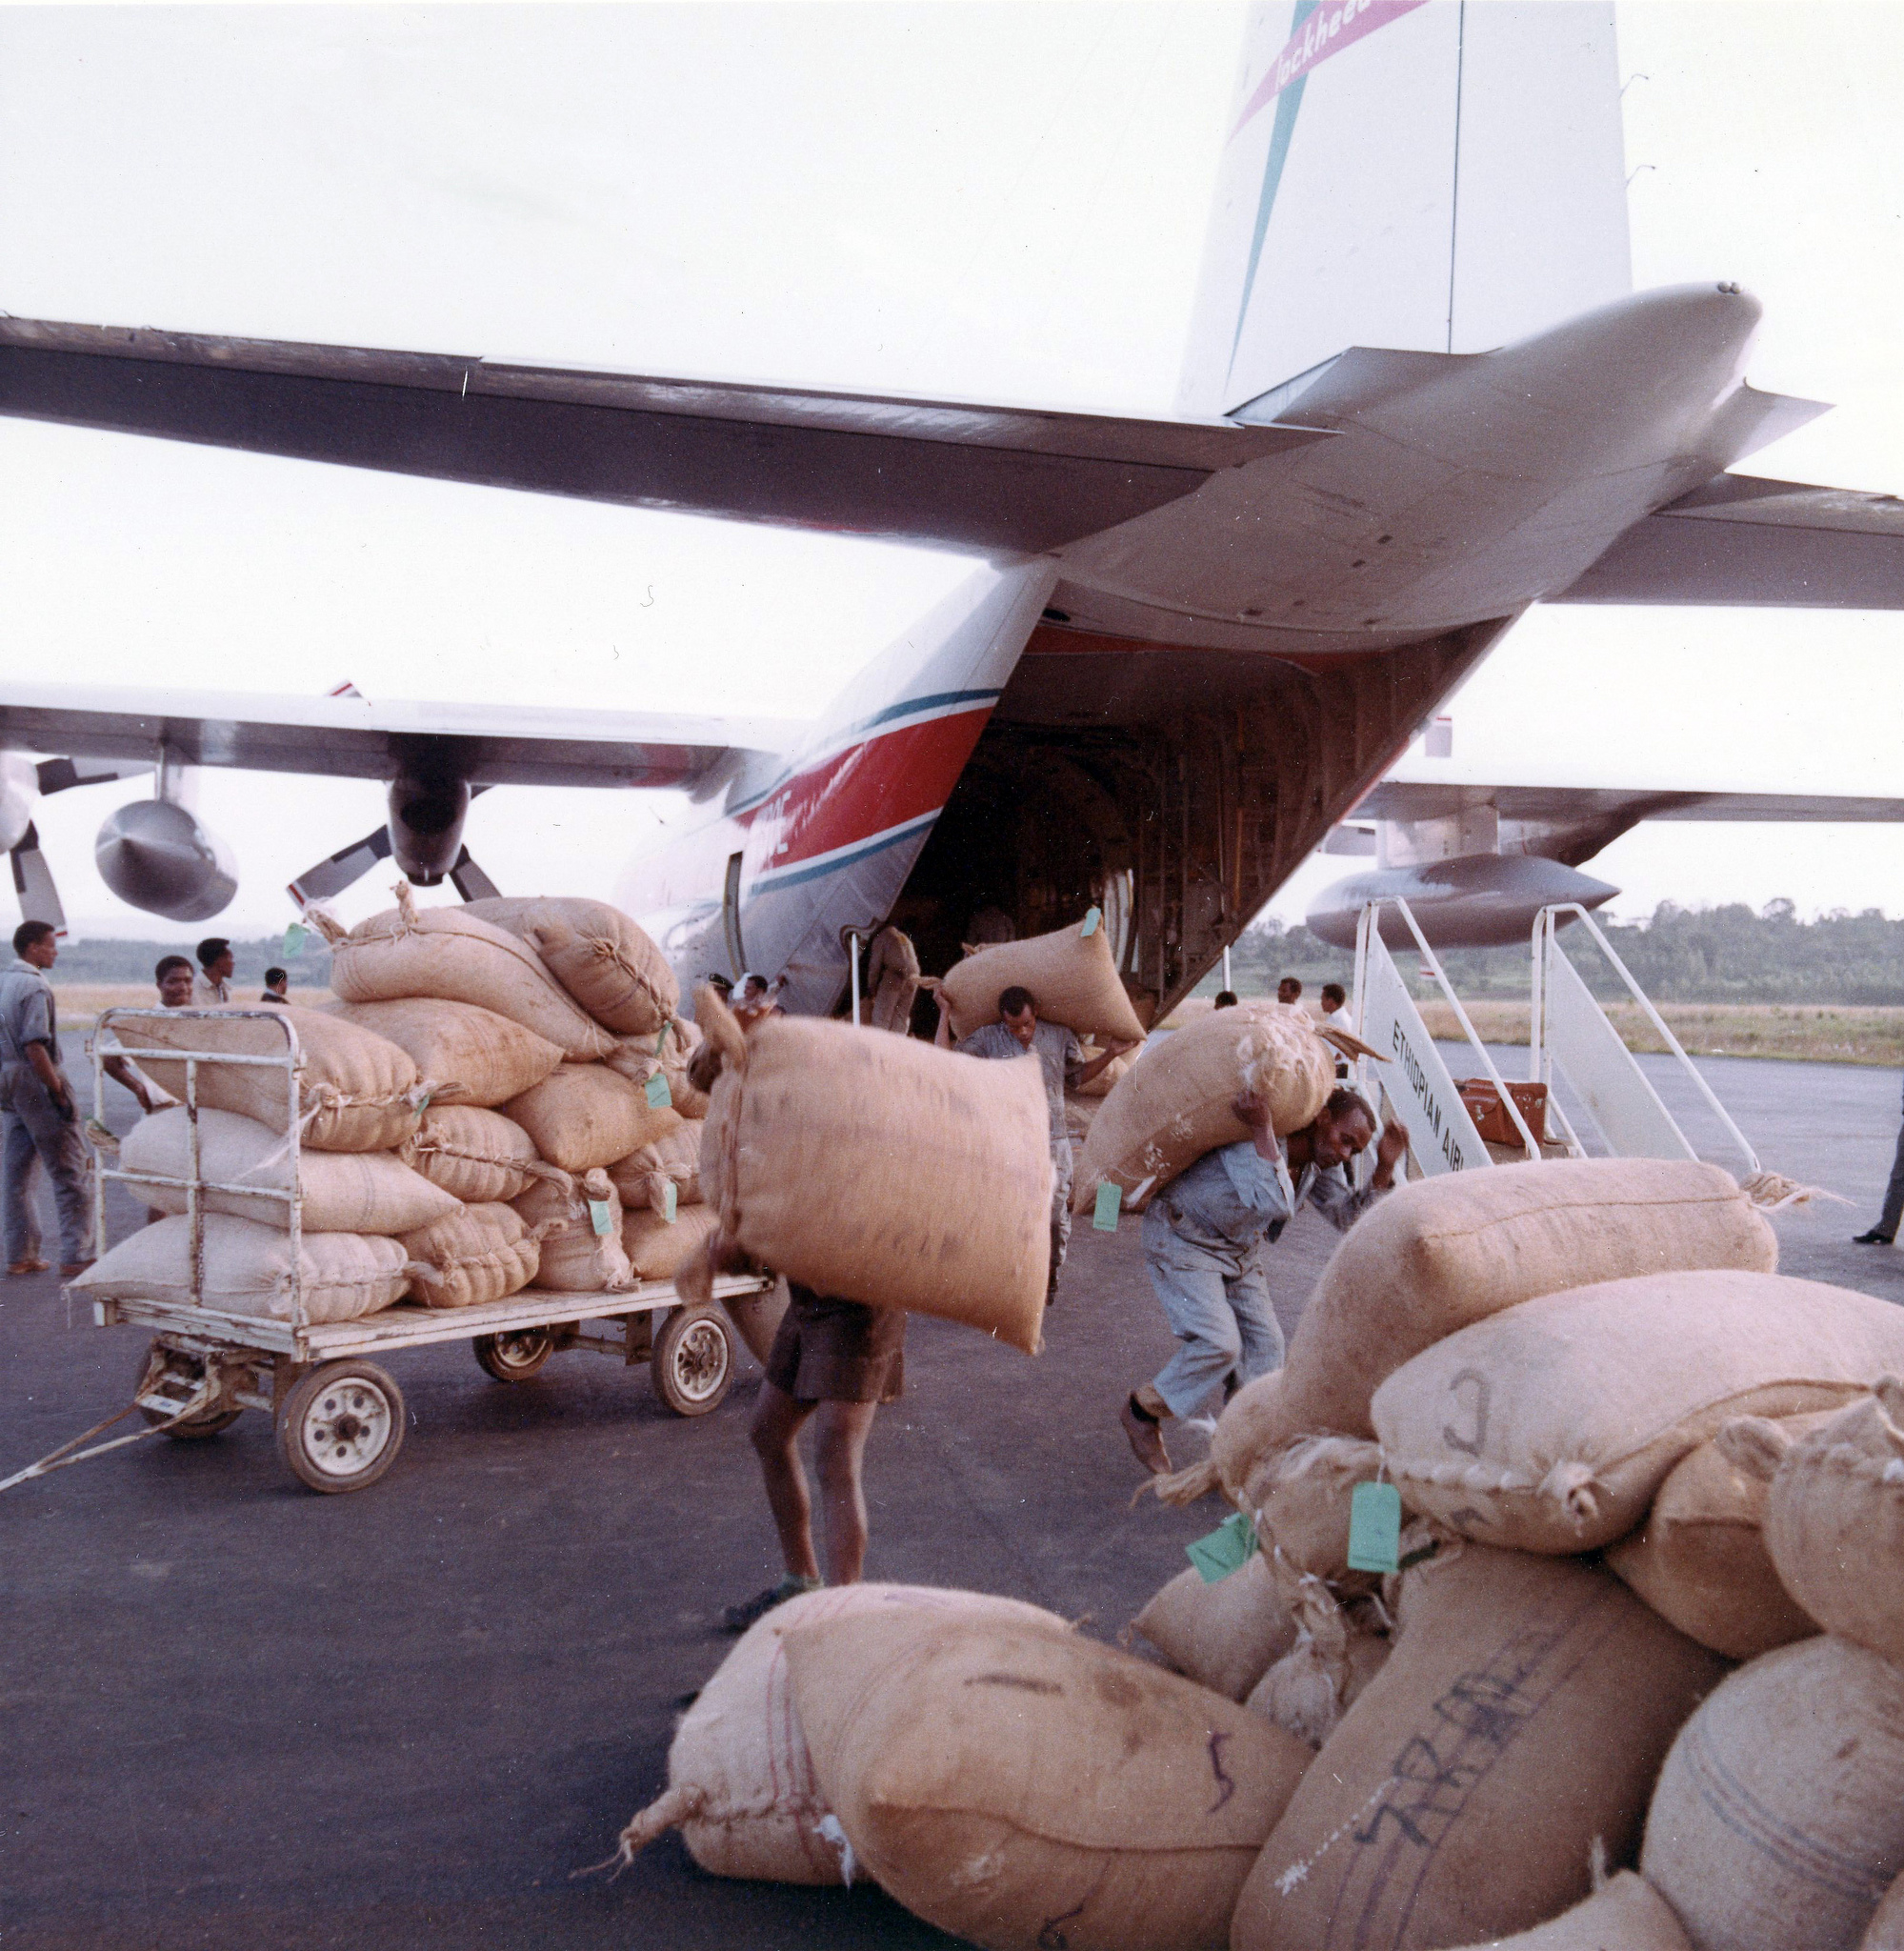 Háború vagy természeti katasztrófa: a Herkyk rendszerint elsővonalas gépei a humanitárius bevetéseknek